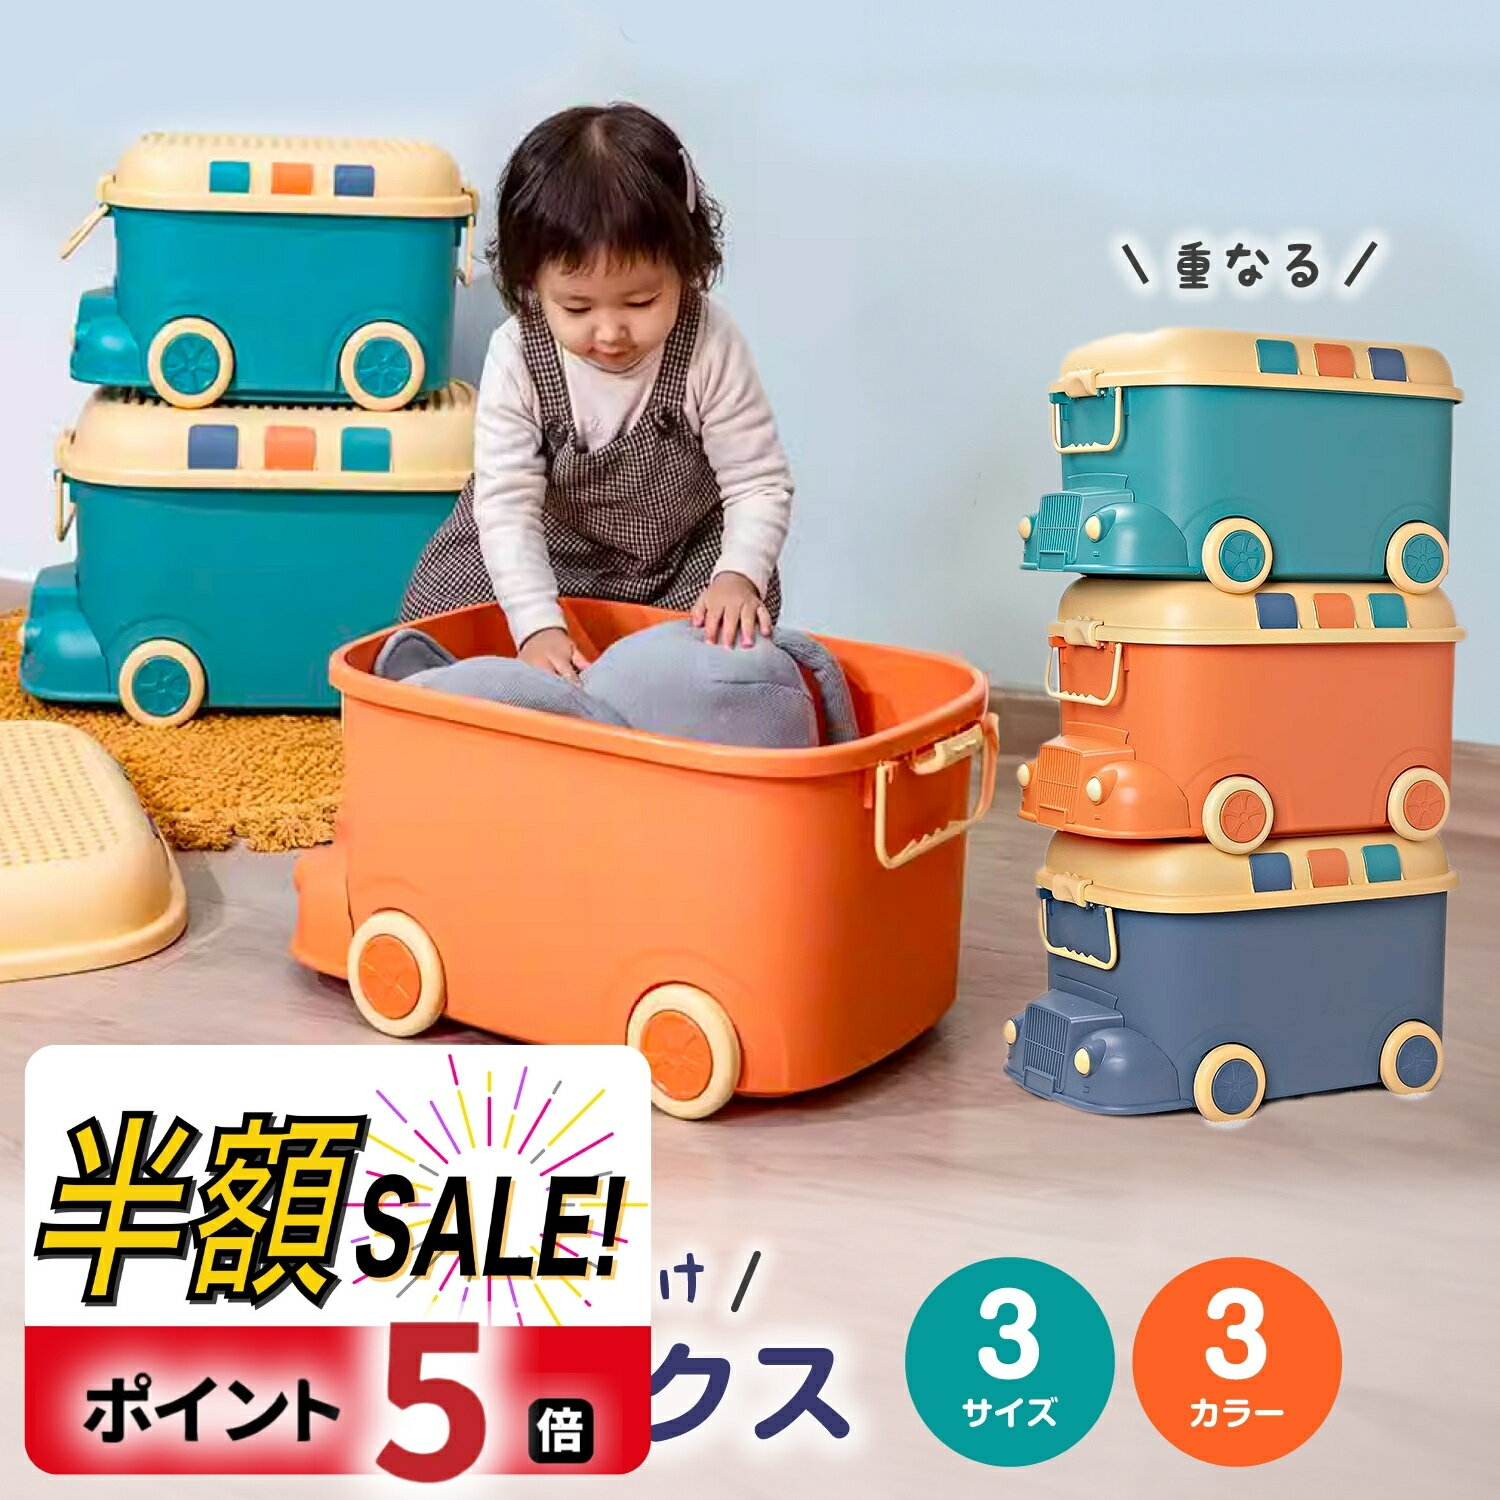 【300円クーポンOFF+P5倍】おもちゃ 収納 ボックス 